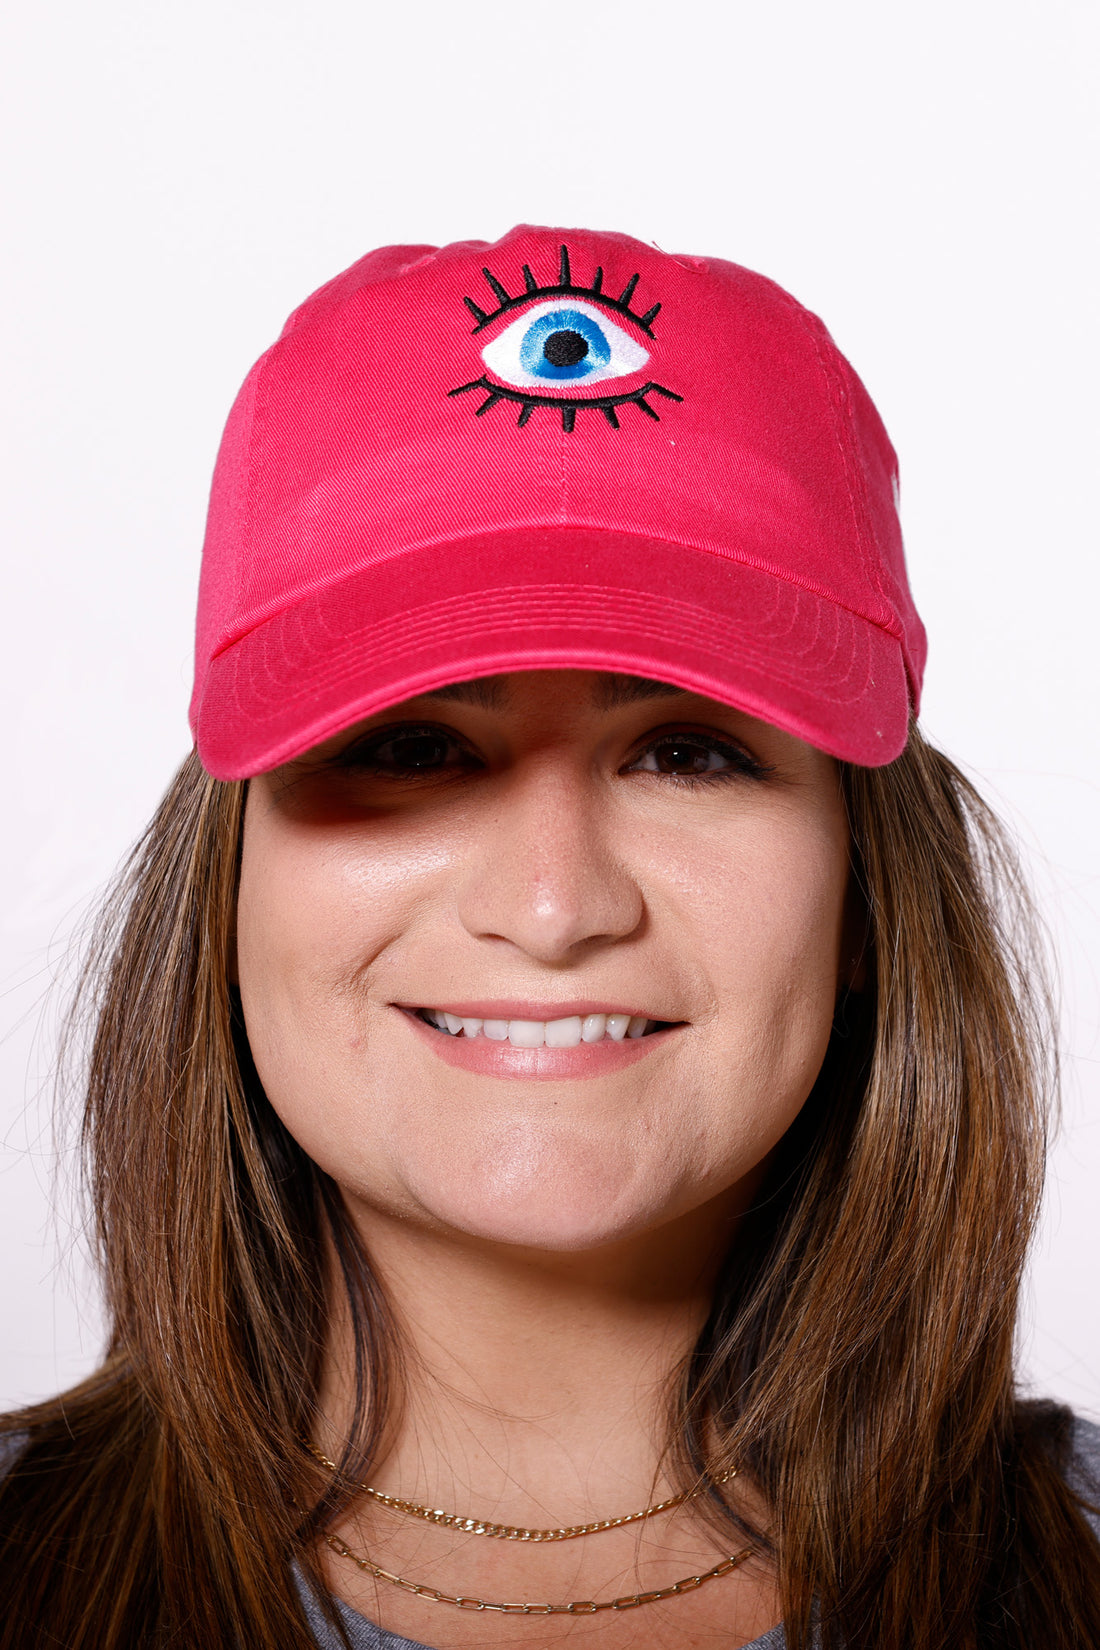 Martha of Miami wearing denim Mal de Ojo Hat for Protection Evil Eye Hat Gorra de Mal de Ojo